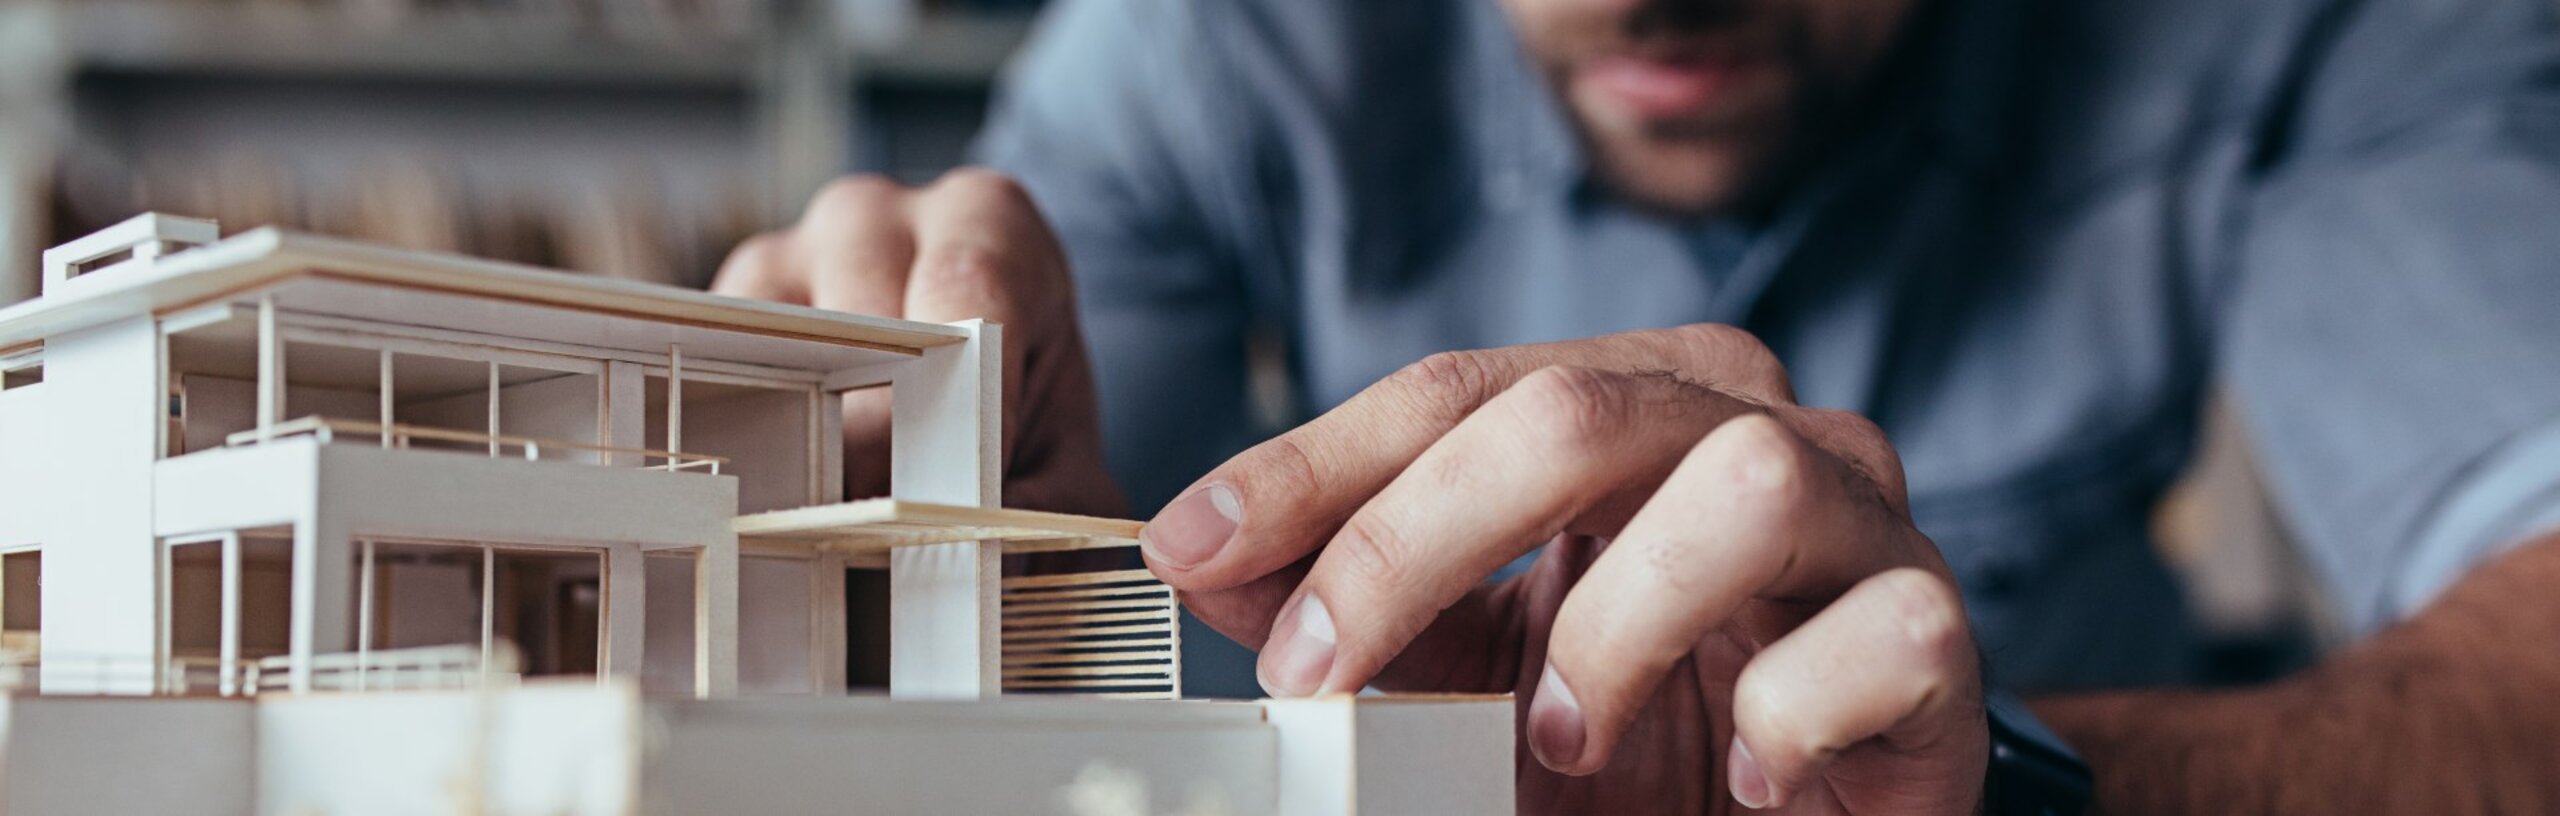 Ein Mann im blauen Hemd setzt vorsichtig Teile in einem Architekturmodell ein.